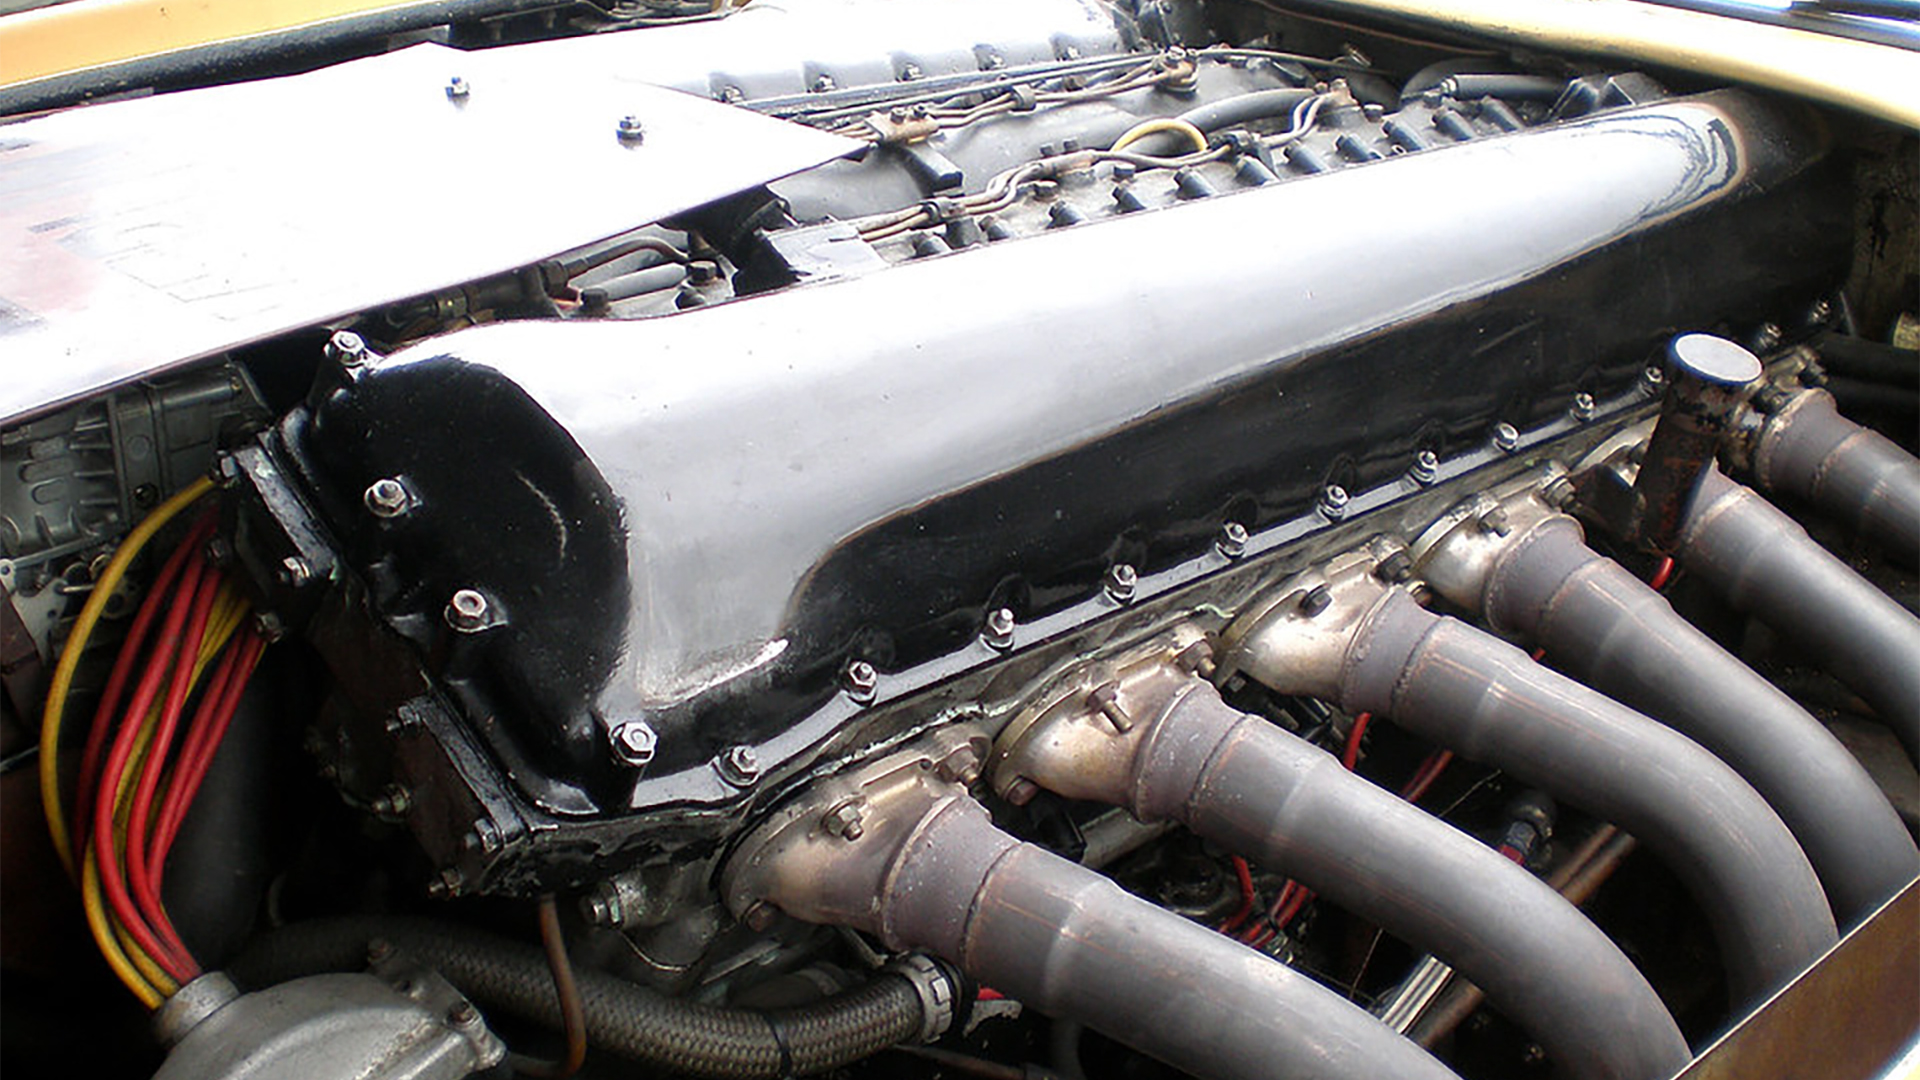 Los seis cilindros de cada bloque y las dimensiones del motor, eran fuera de lo común. Se trataba del mismo block del Spitfire de la Segunda Guerra Mundial